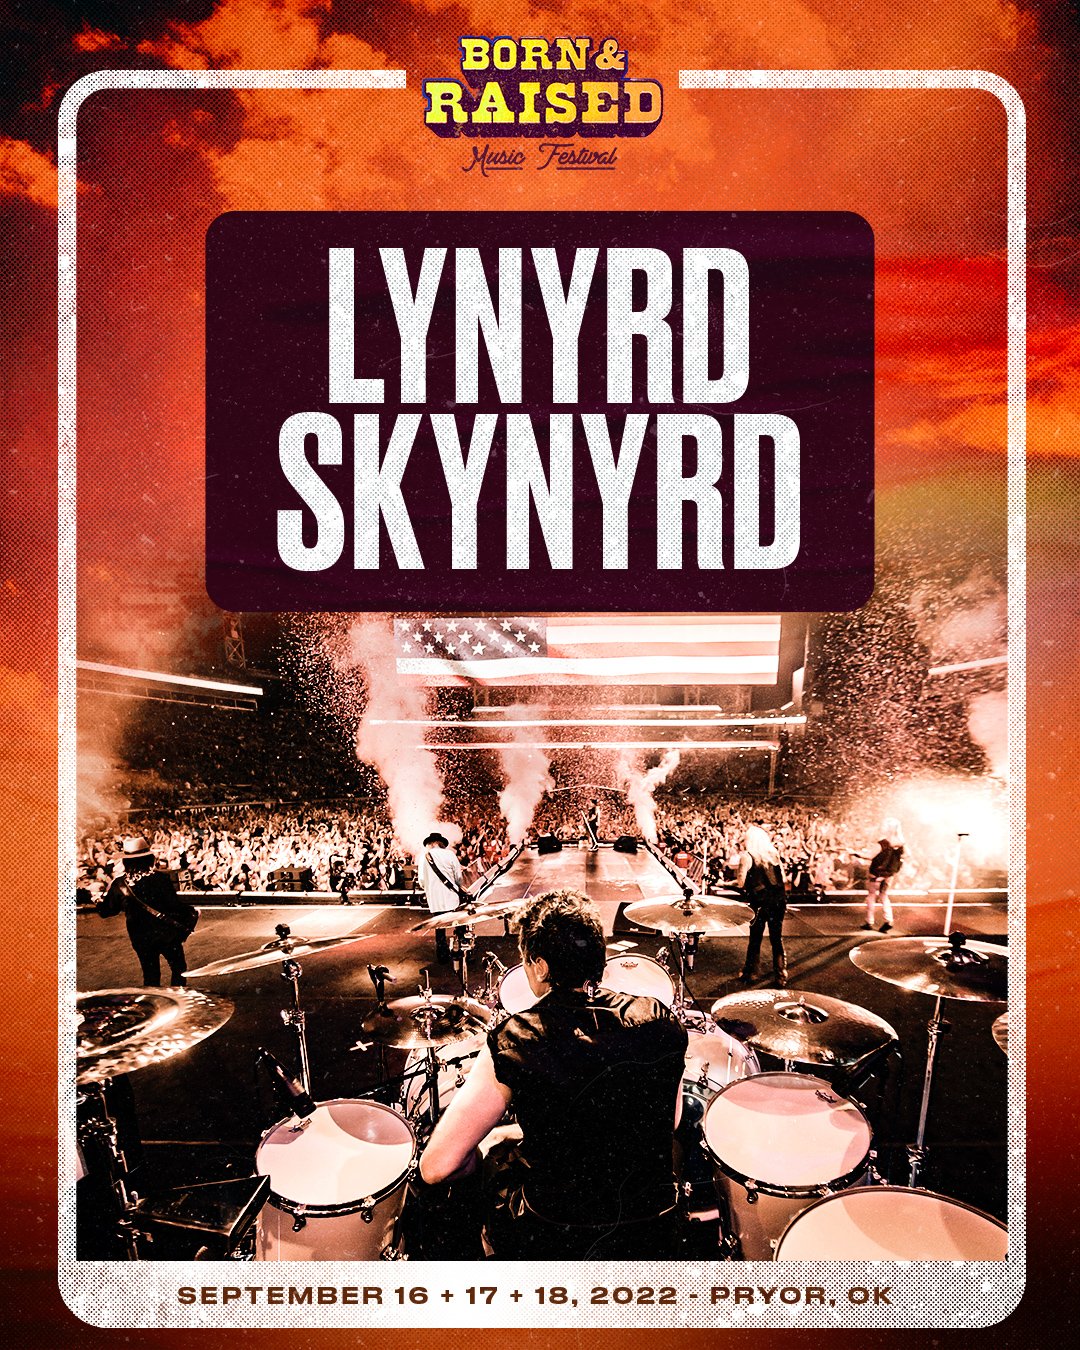 Lynyrd Skynyrd will headline Sunday night at Born & Raised Fest